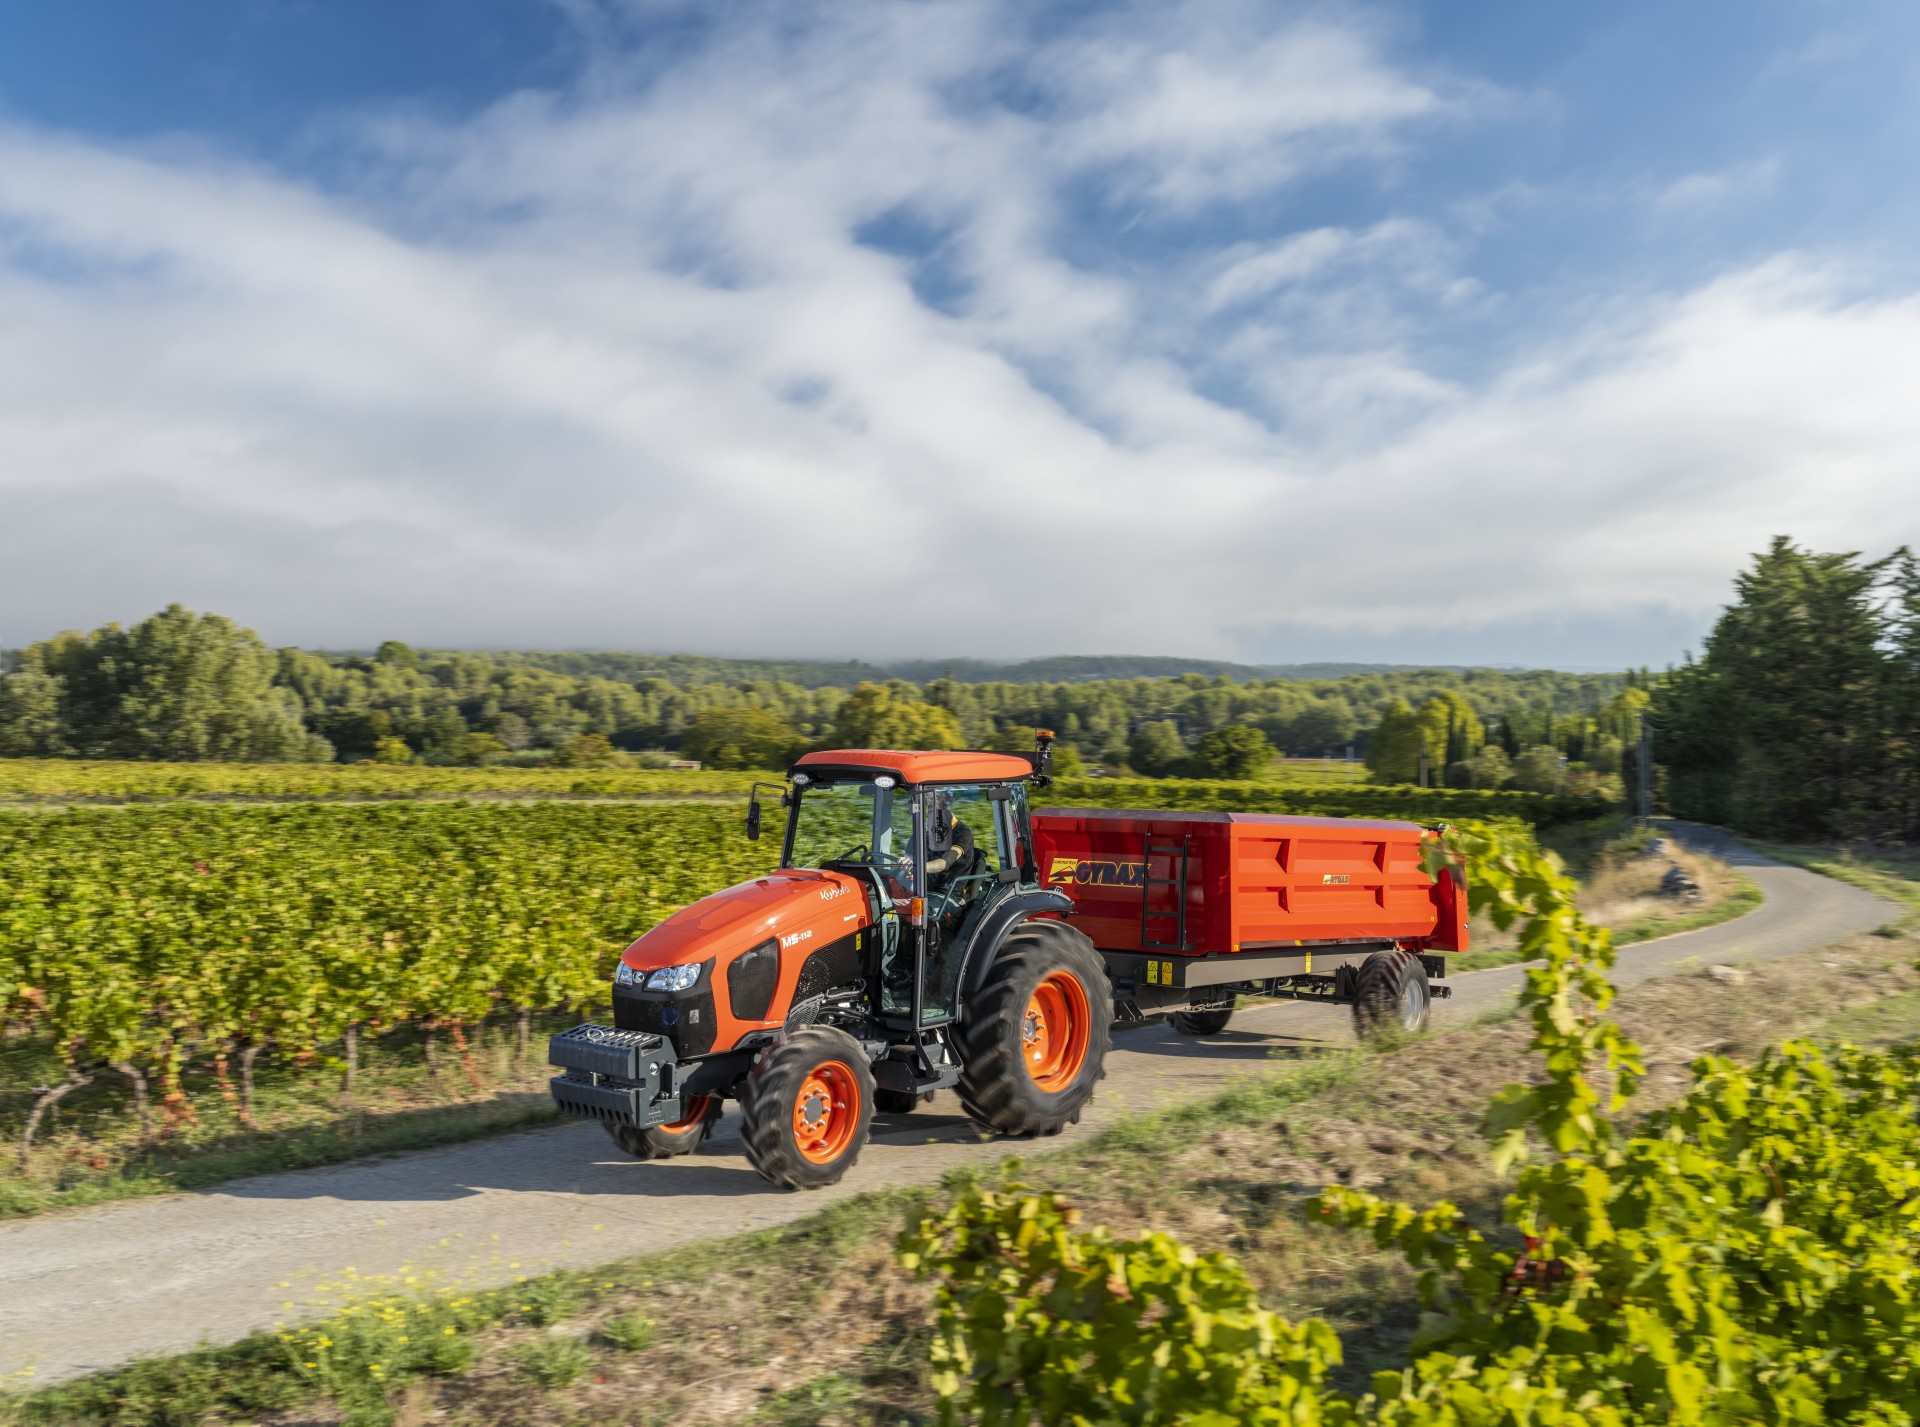 Kubota presenta la nueva serie de tractores M5002 Narrow, más potente, confortable y segura